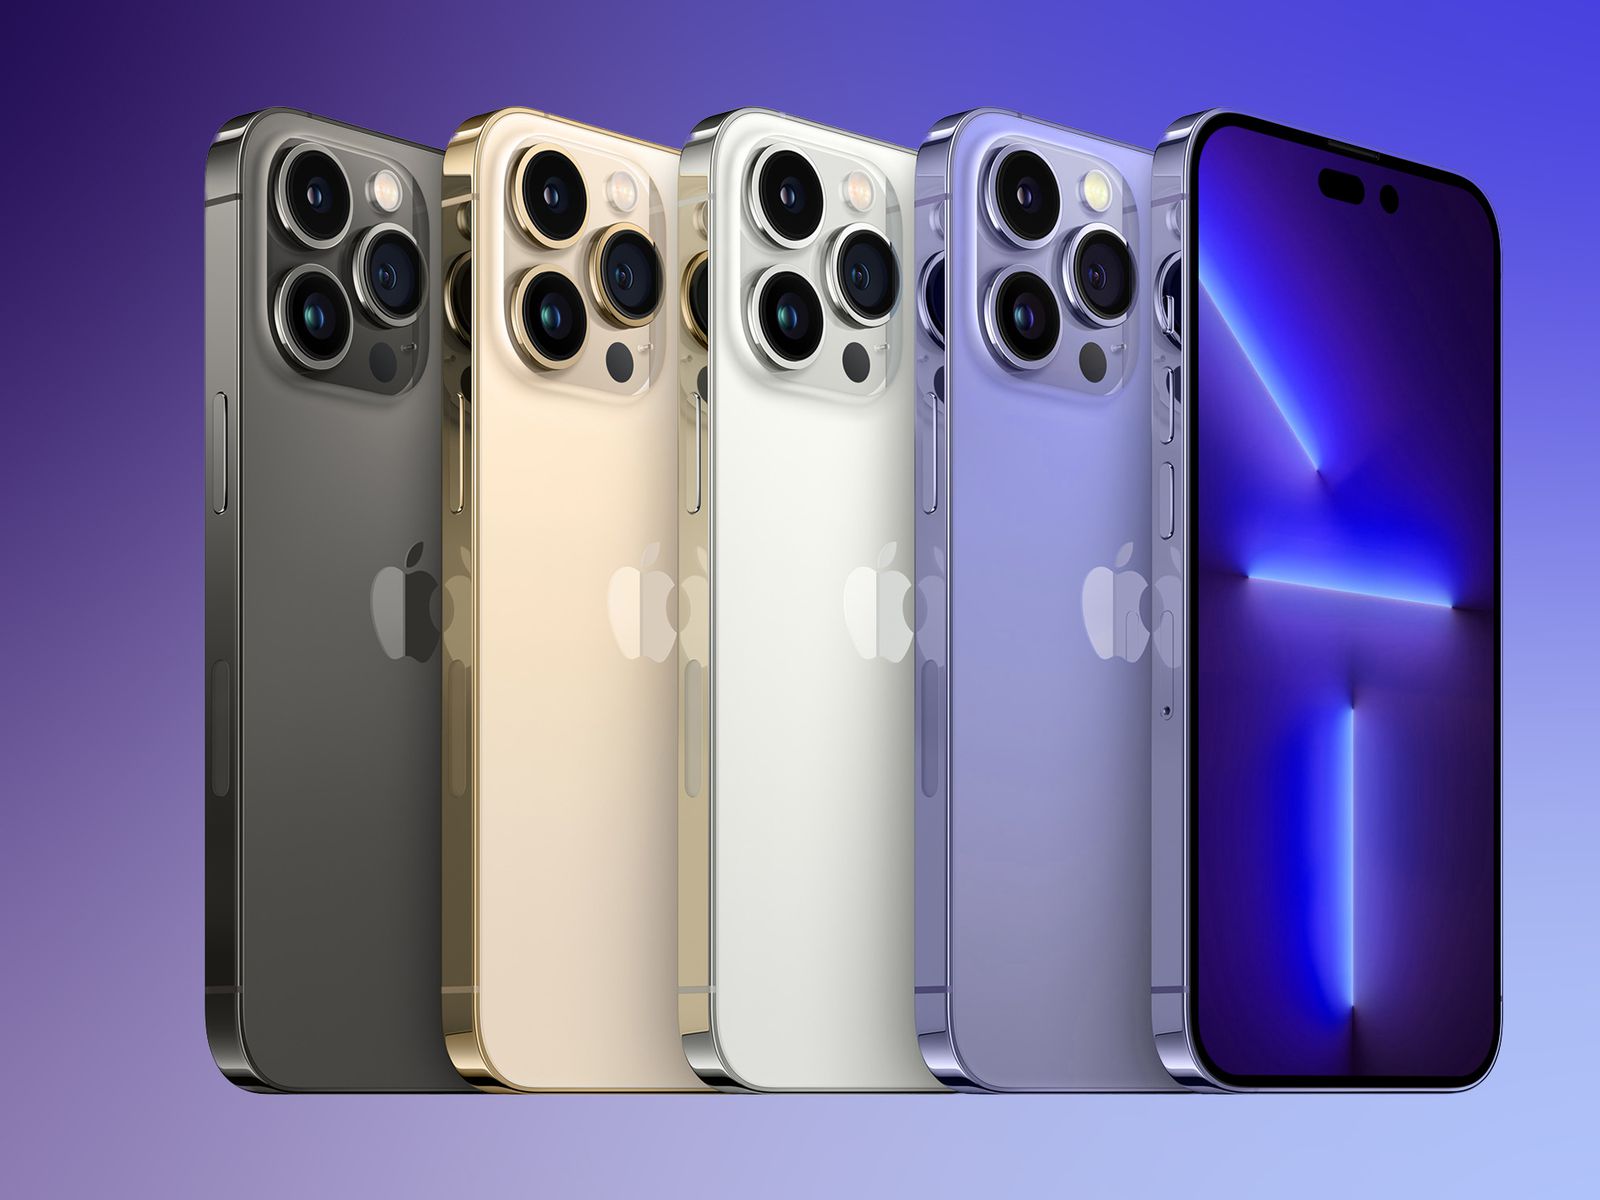 iPhone 14 Color Options: Với các tùy chọn màu sắc đa dạng, iPhone 14 đang thu hút sự chú ý của các tín đồ công nghệ trên khắp thế giới. Hãy để những hình ảnh tuyệt đẹp về những màu sắc độc đáo và đẳng cấp của iPhone 14 trở thành điểm nhấn trên chiếc điện thoại của bạn. Khám phá ngay hình nền iPhone 14 với các màu sắc đa dạng để thể hiện cá tính và phong cách của riêng bạn.